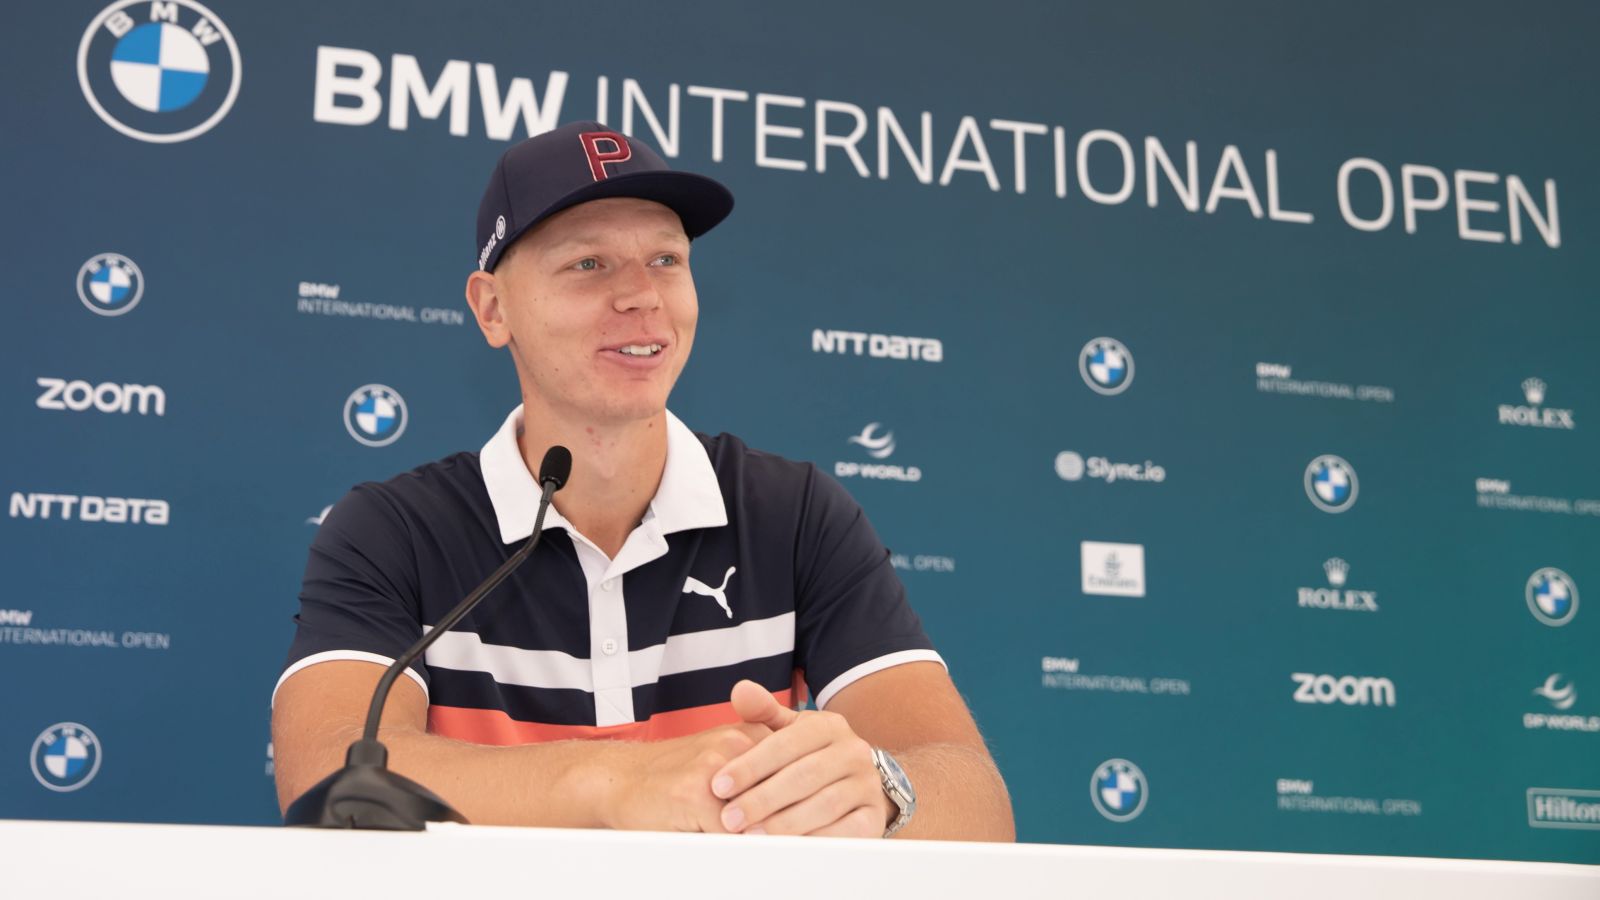 Heimspiel: Bei seiner Rückkehr nach München spielt Matti Schmid die BMW International Open, scheitert aber am Cut. © Stefan Heigl